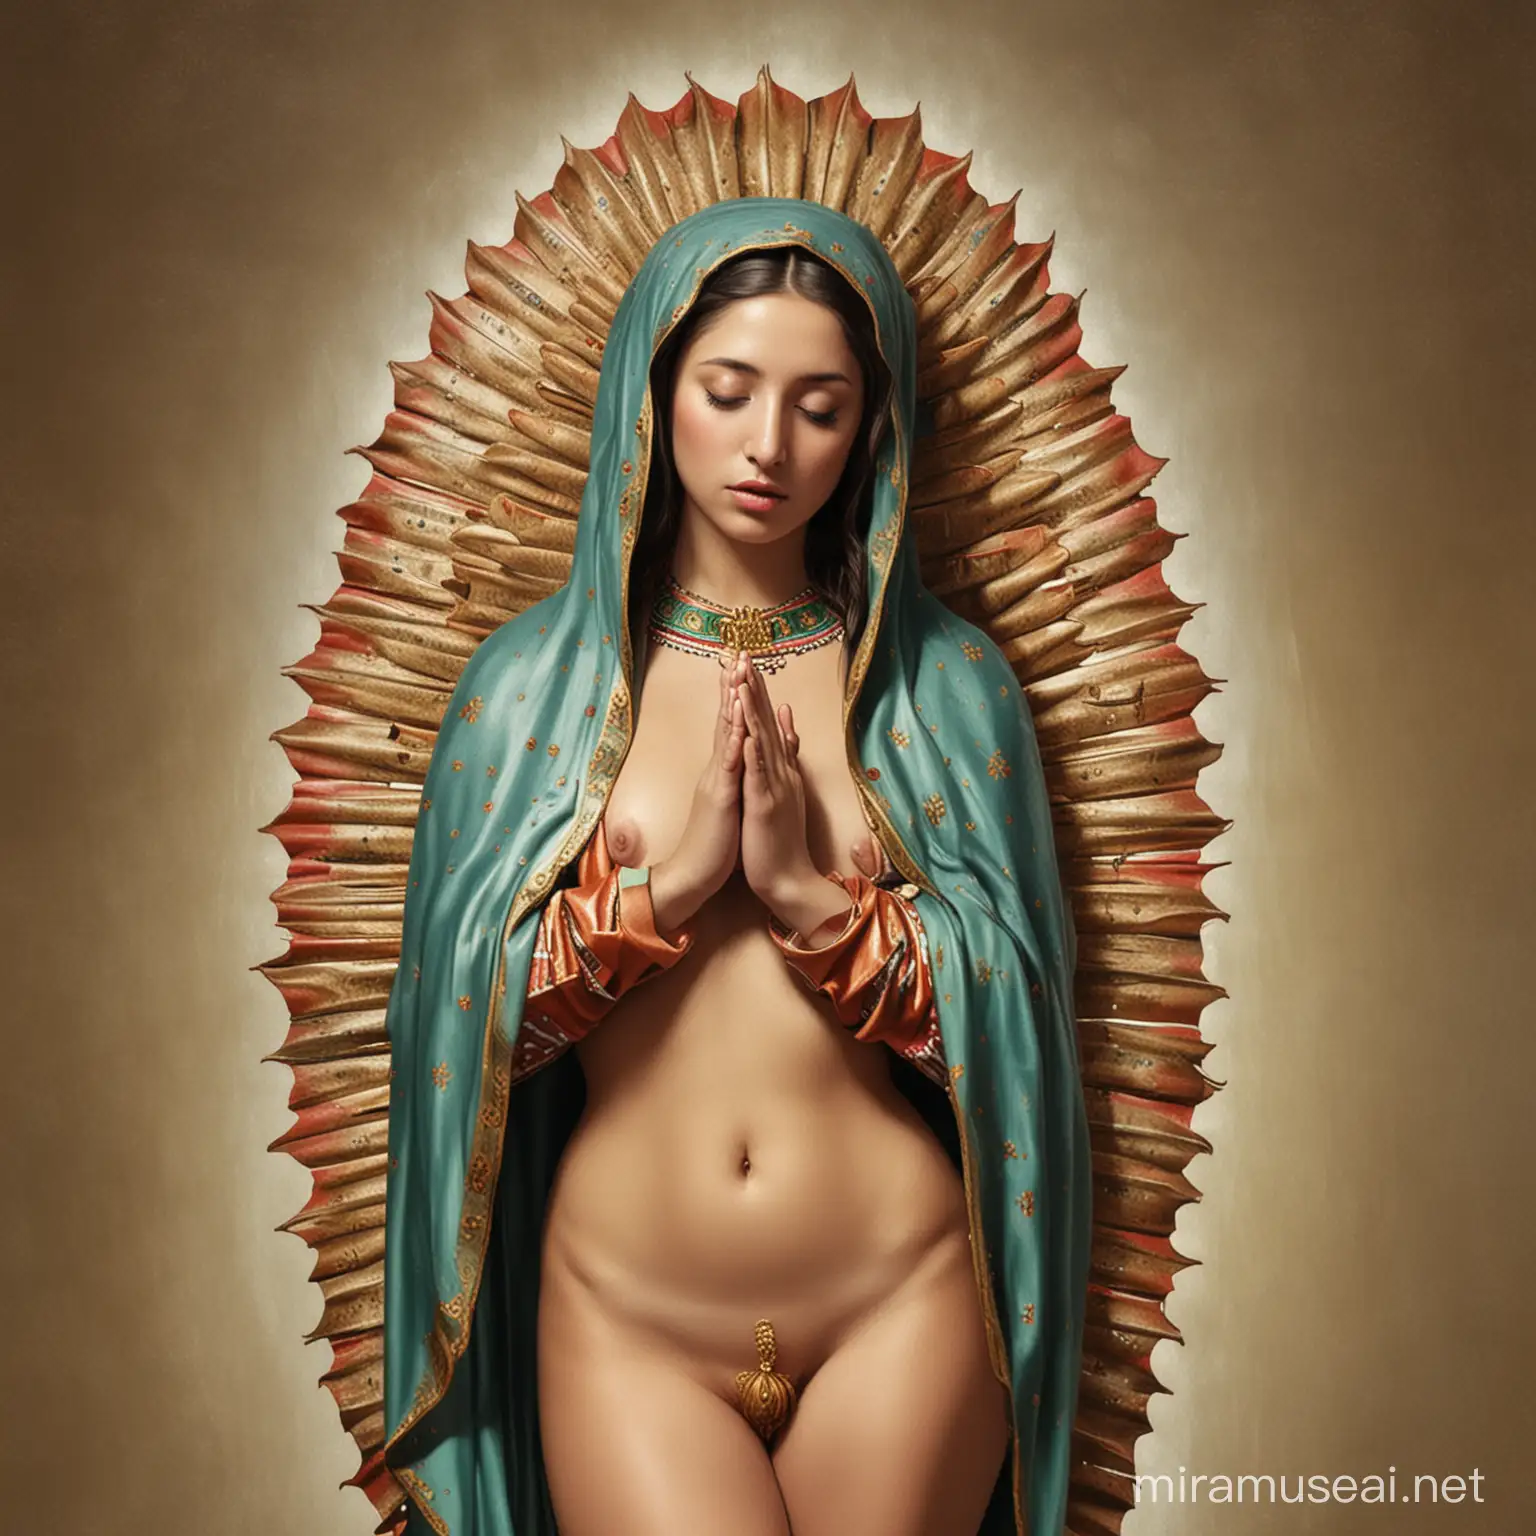 Naked Virgin of Guadalupe in a Serene Landscape